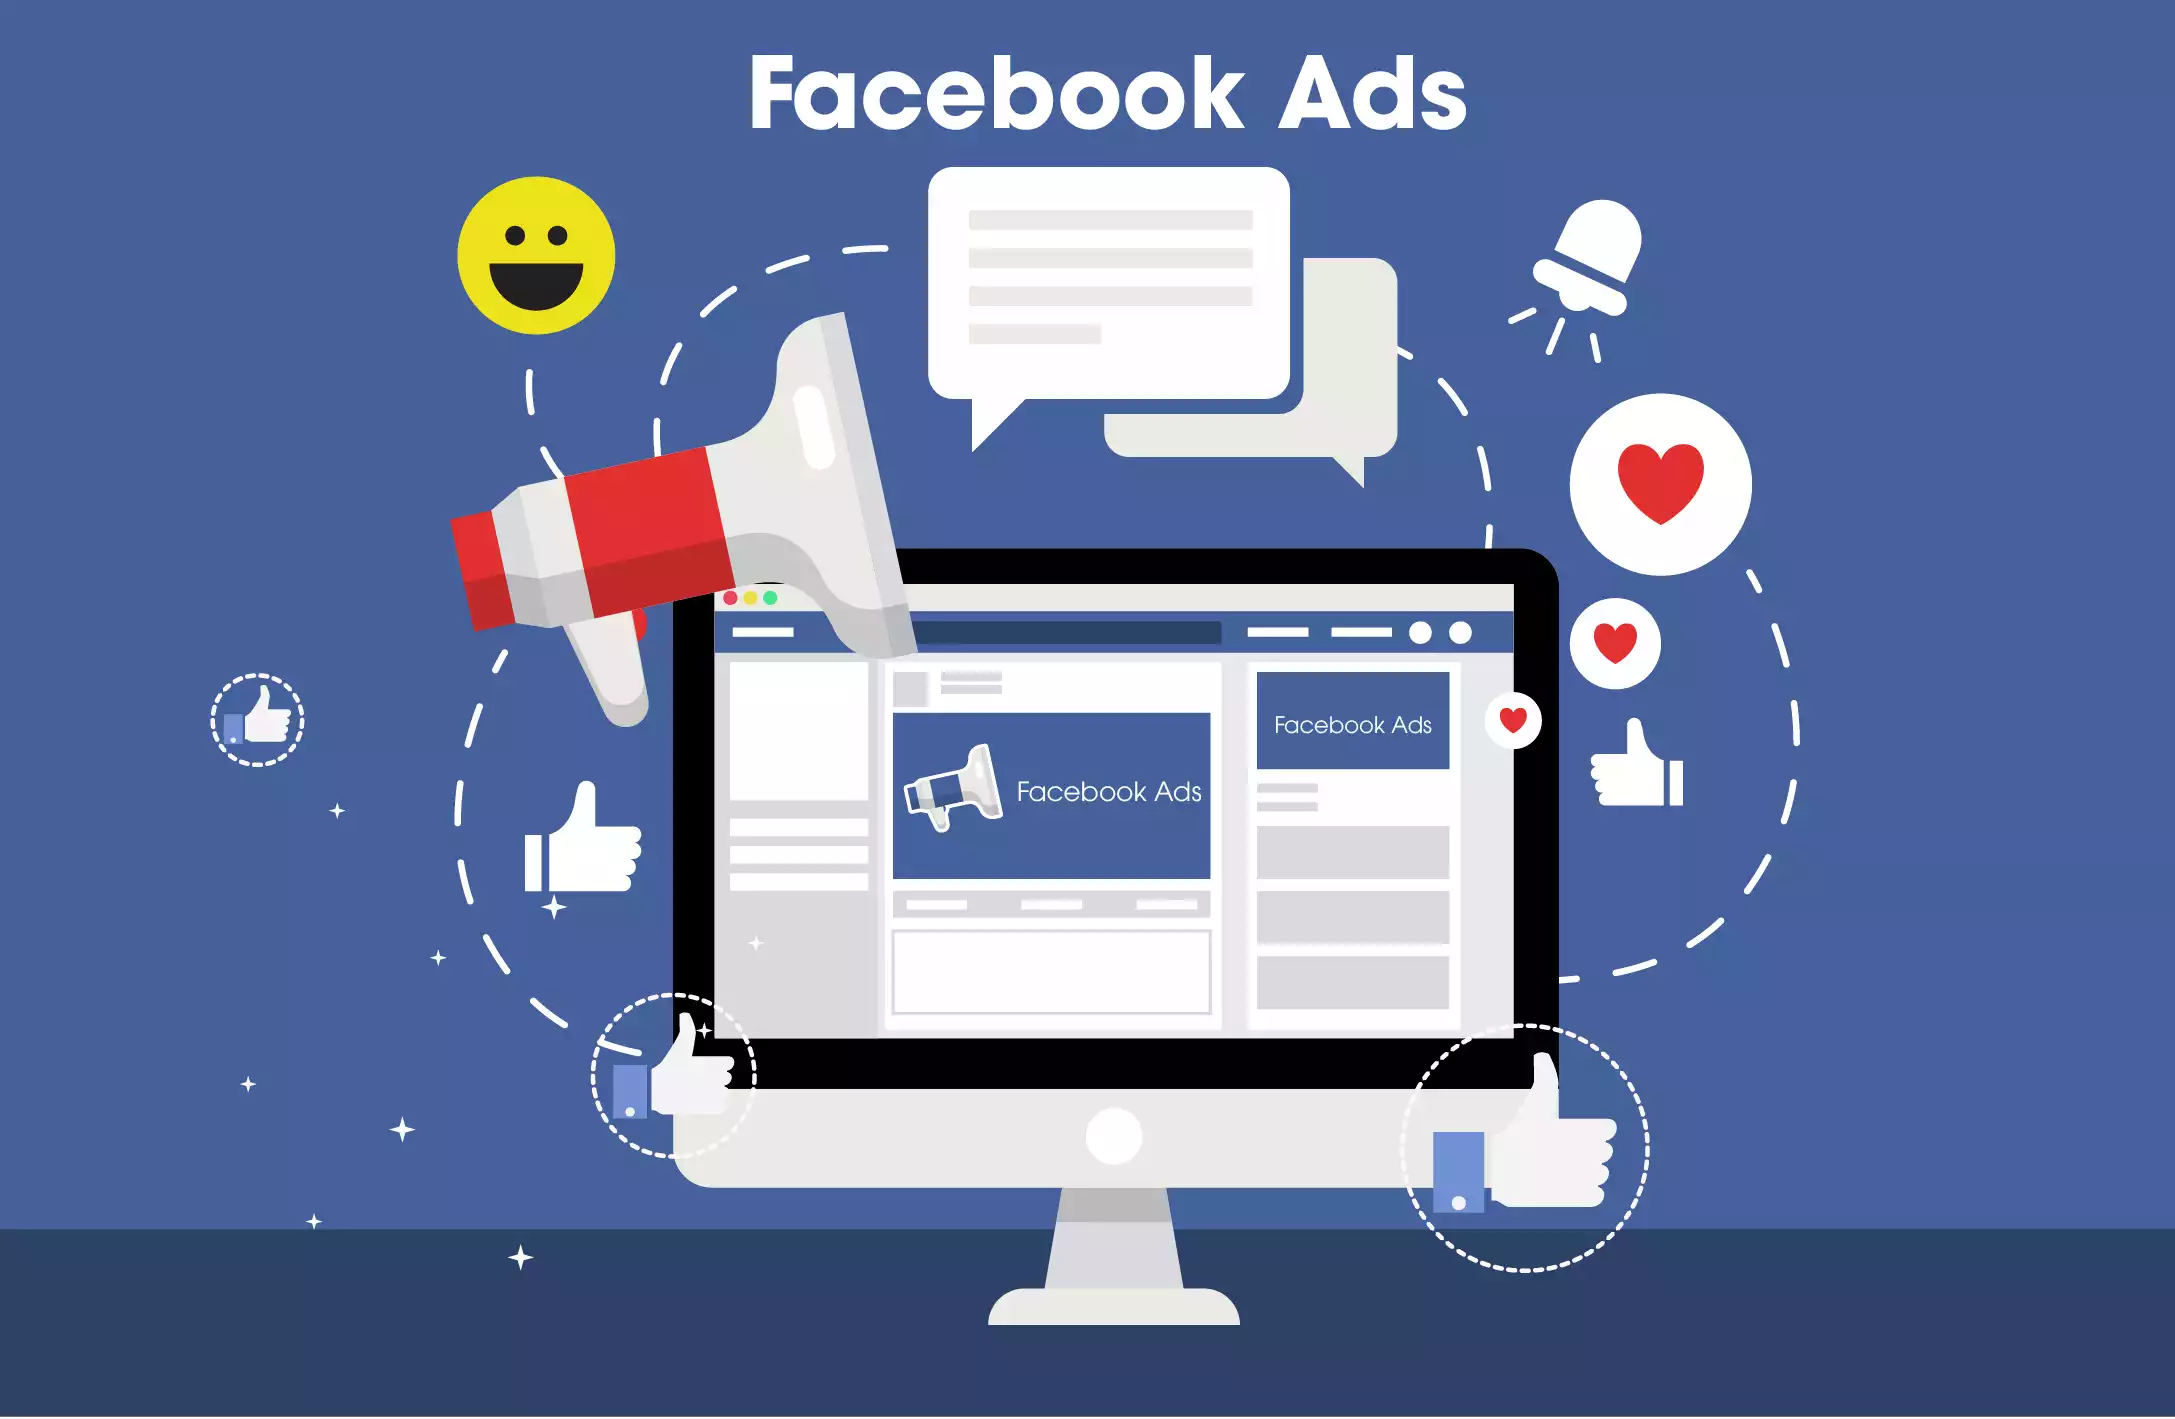 Thuê chạy quảng cáo Facebook có nên không? TOP 2 bài học cần lưu ý